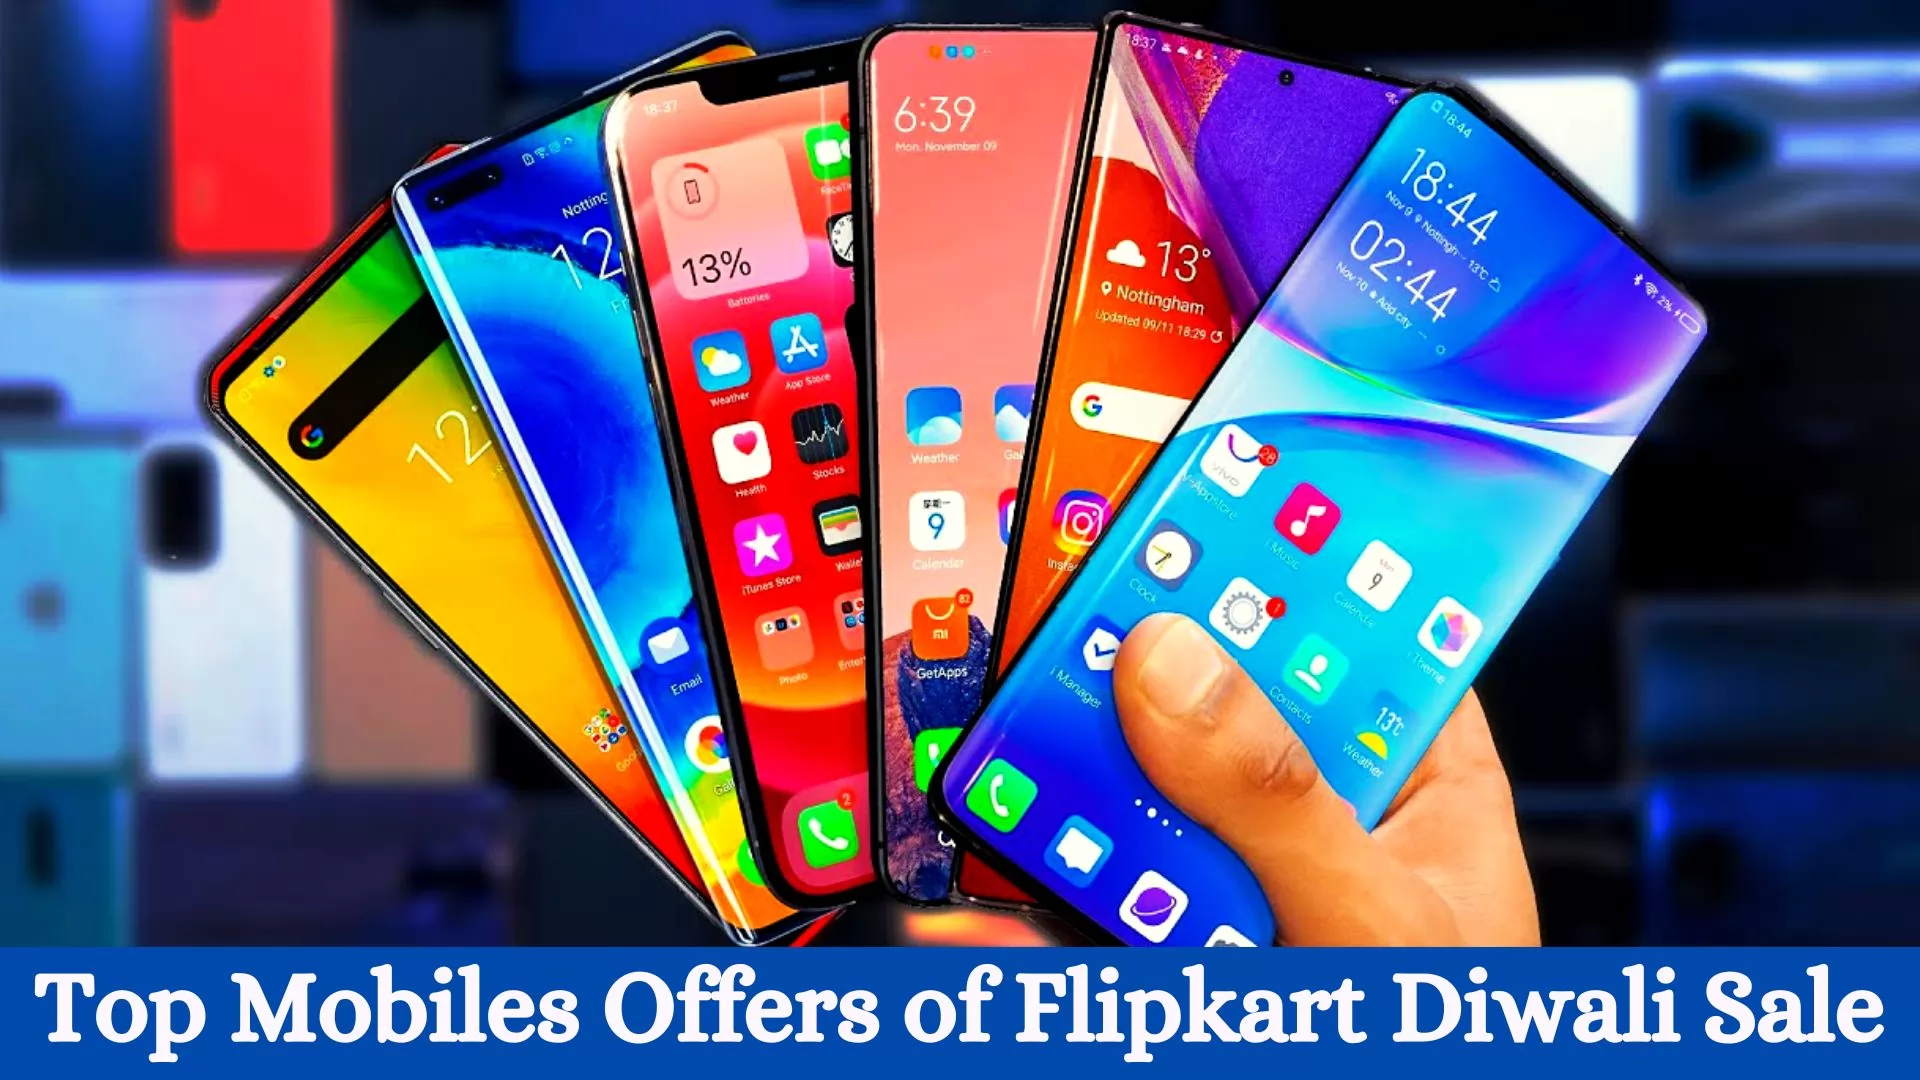 Top Mobiles Offers of Flipkart Diwali Sale 